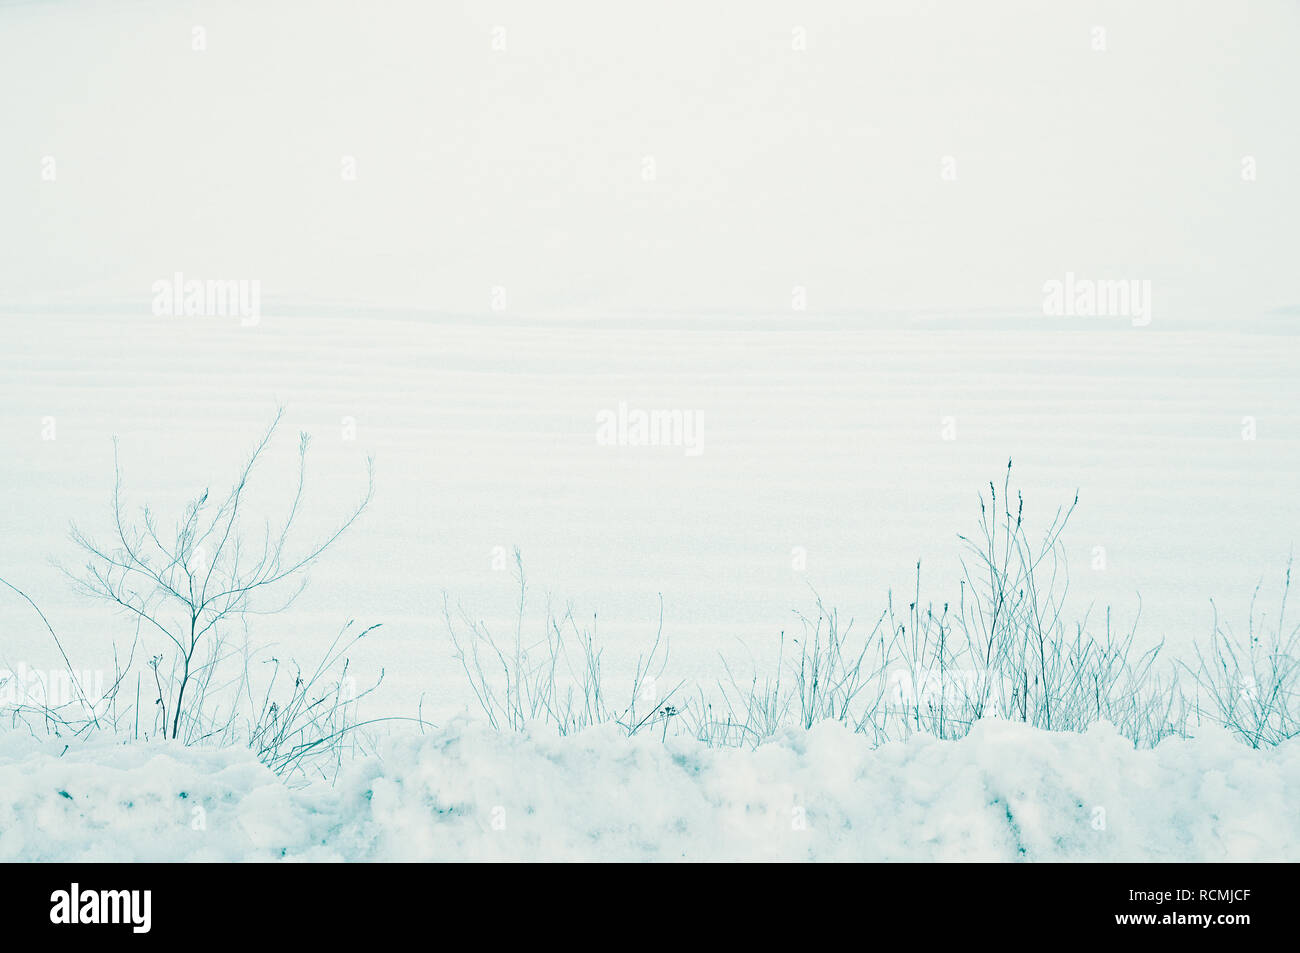 Ruhige, ländliche Winterlandschaft von kalten Schnee, der Boden von Ackerland in der Landschaft eine leise Dezember Morgen. Weiche blaue Farbtöne und Copyspace Stockfoto